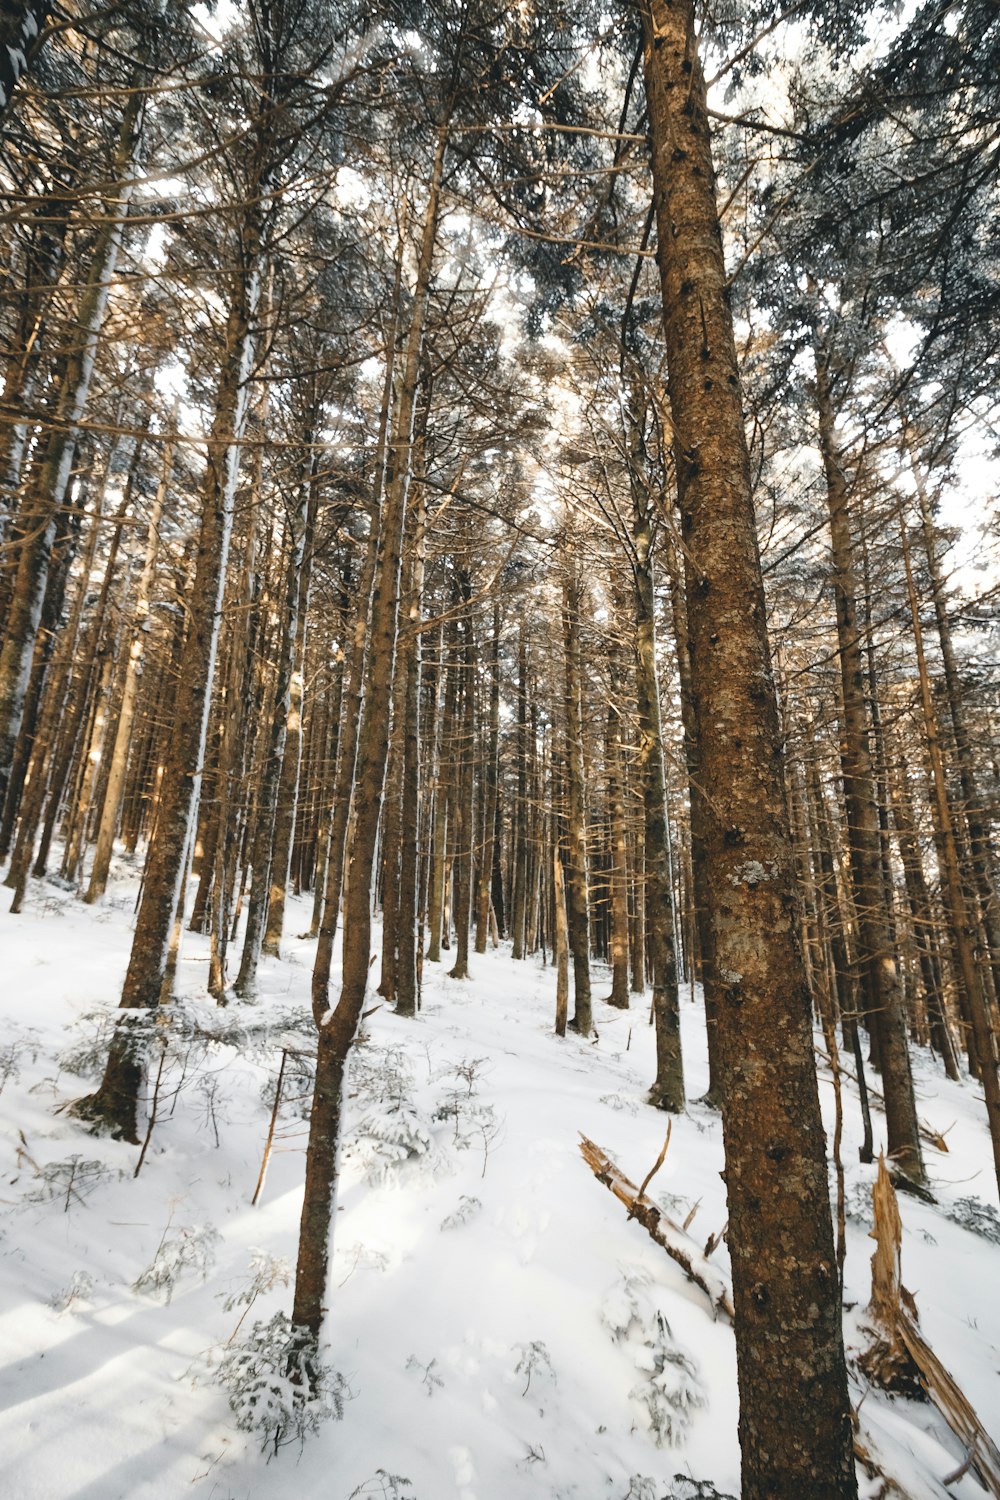 Wurmaugenfoto von grün belaubten Bäumen im Schnee